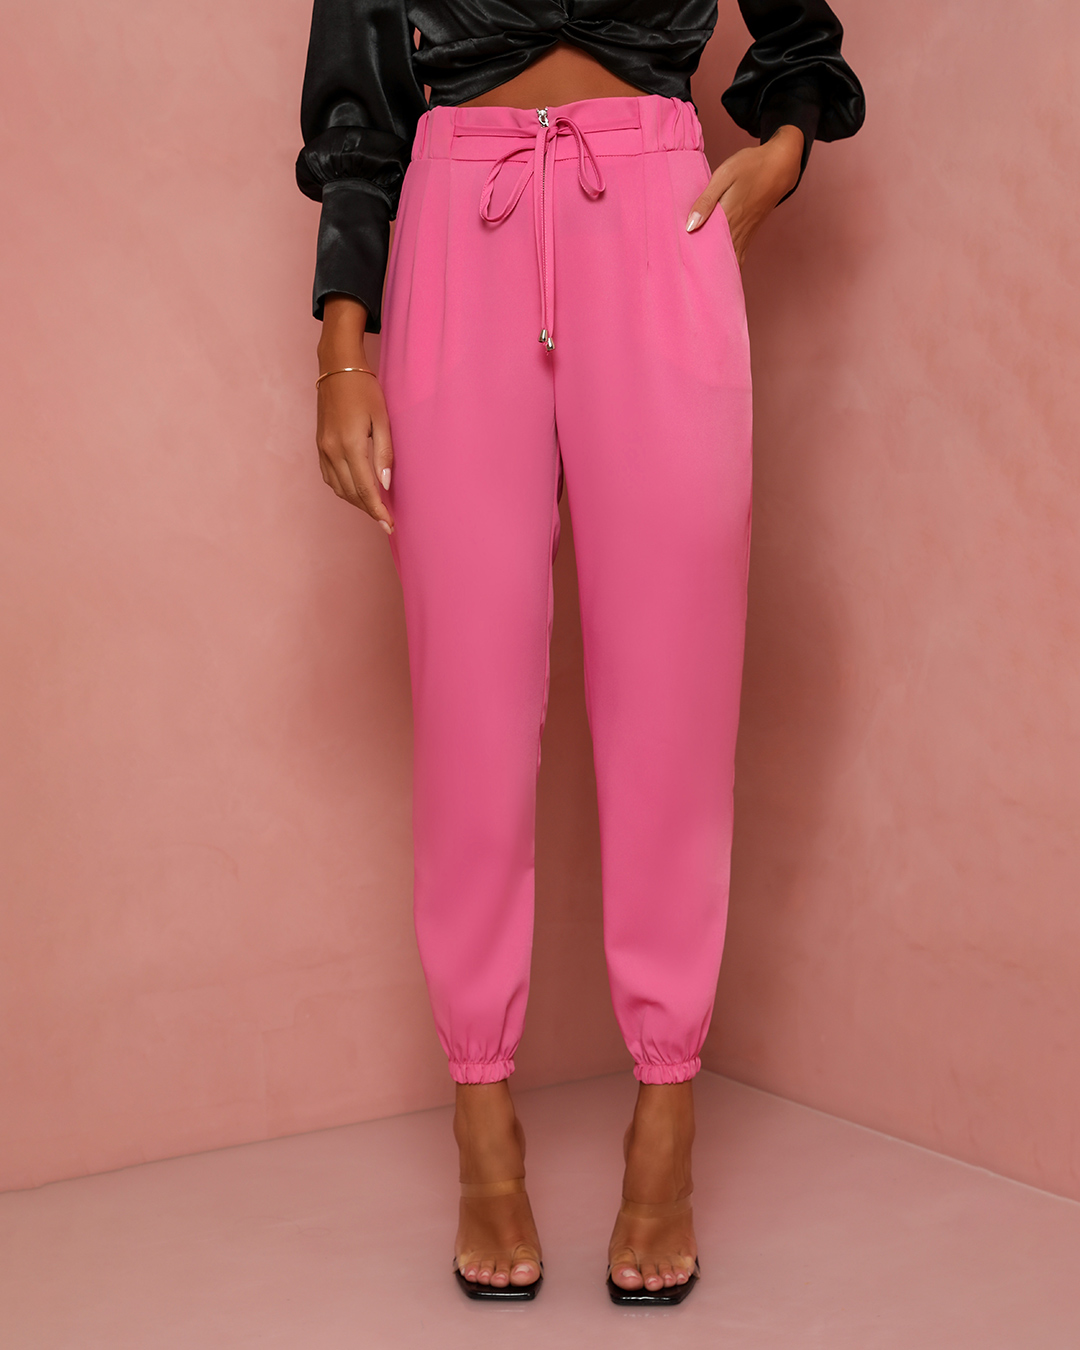 Dot Clothing - Pants Dot Clothing Jogger Pink - 1519ROSA